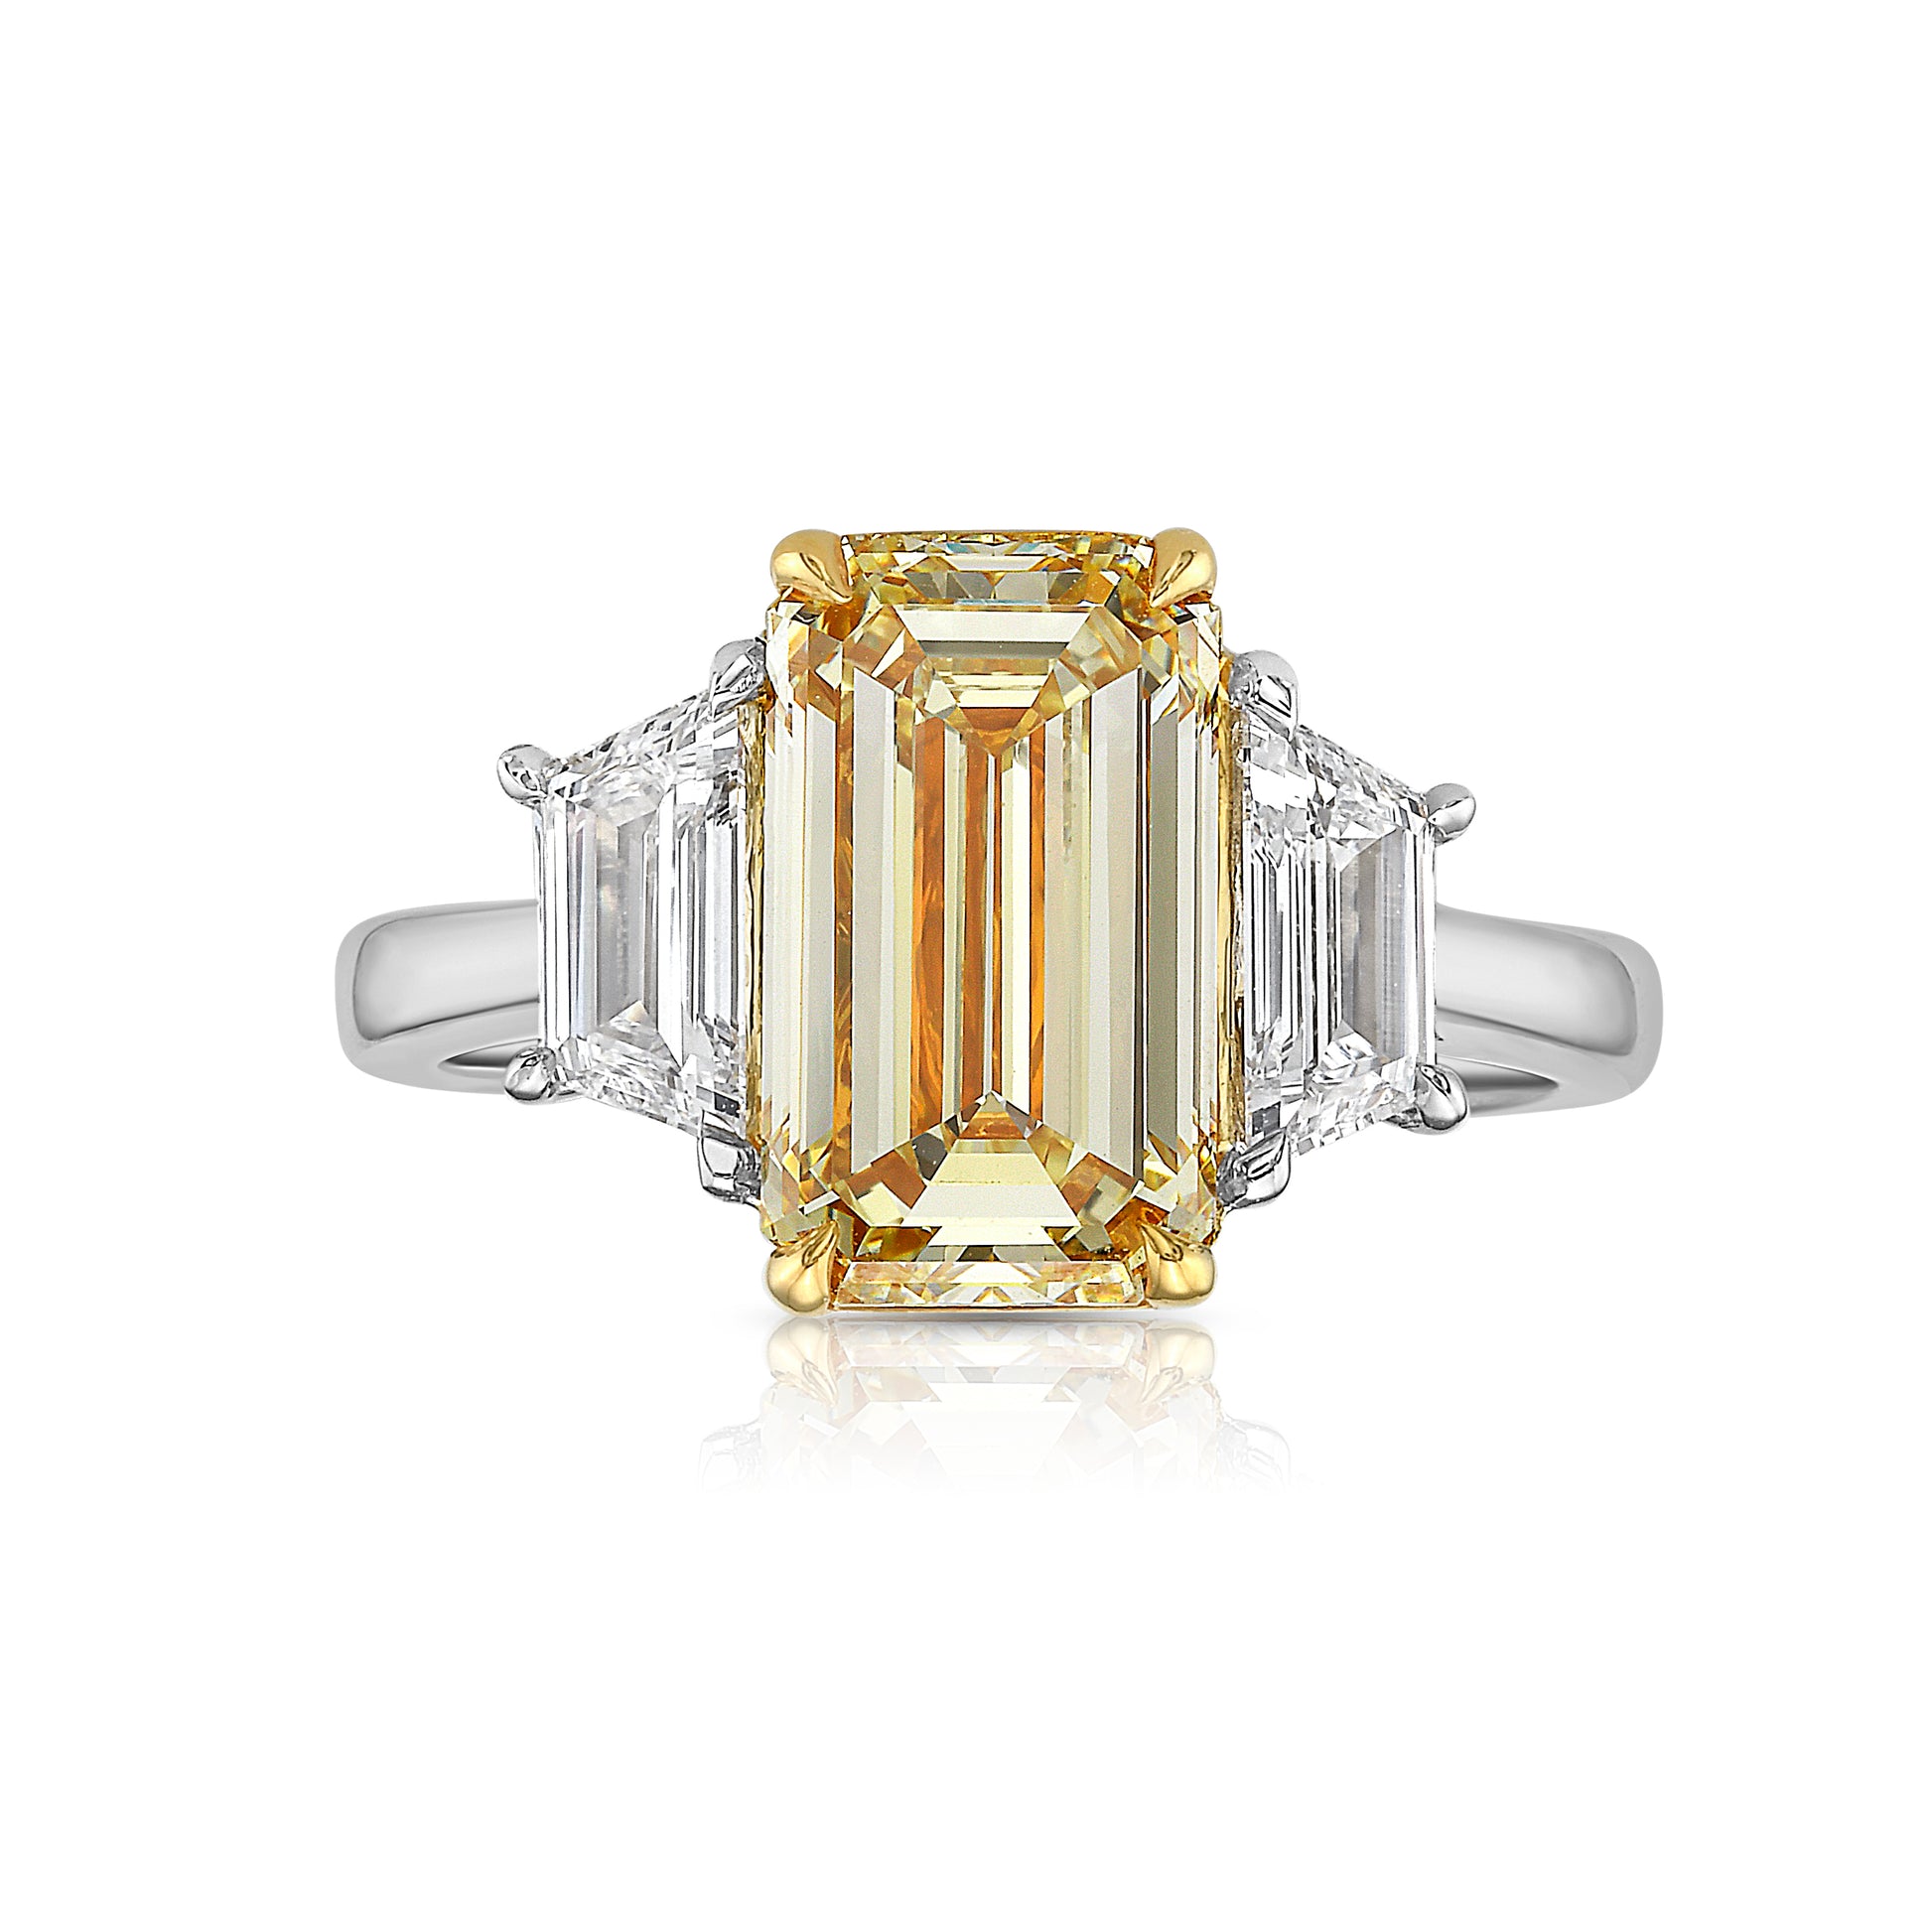 3 carat yellow diamond elongated emerald cut three stone ring with trapezoids. yellow diamond emerald